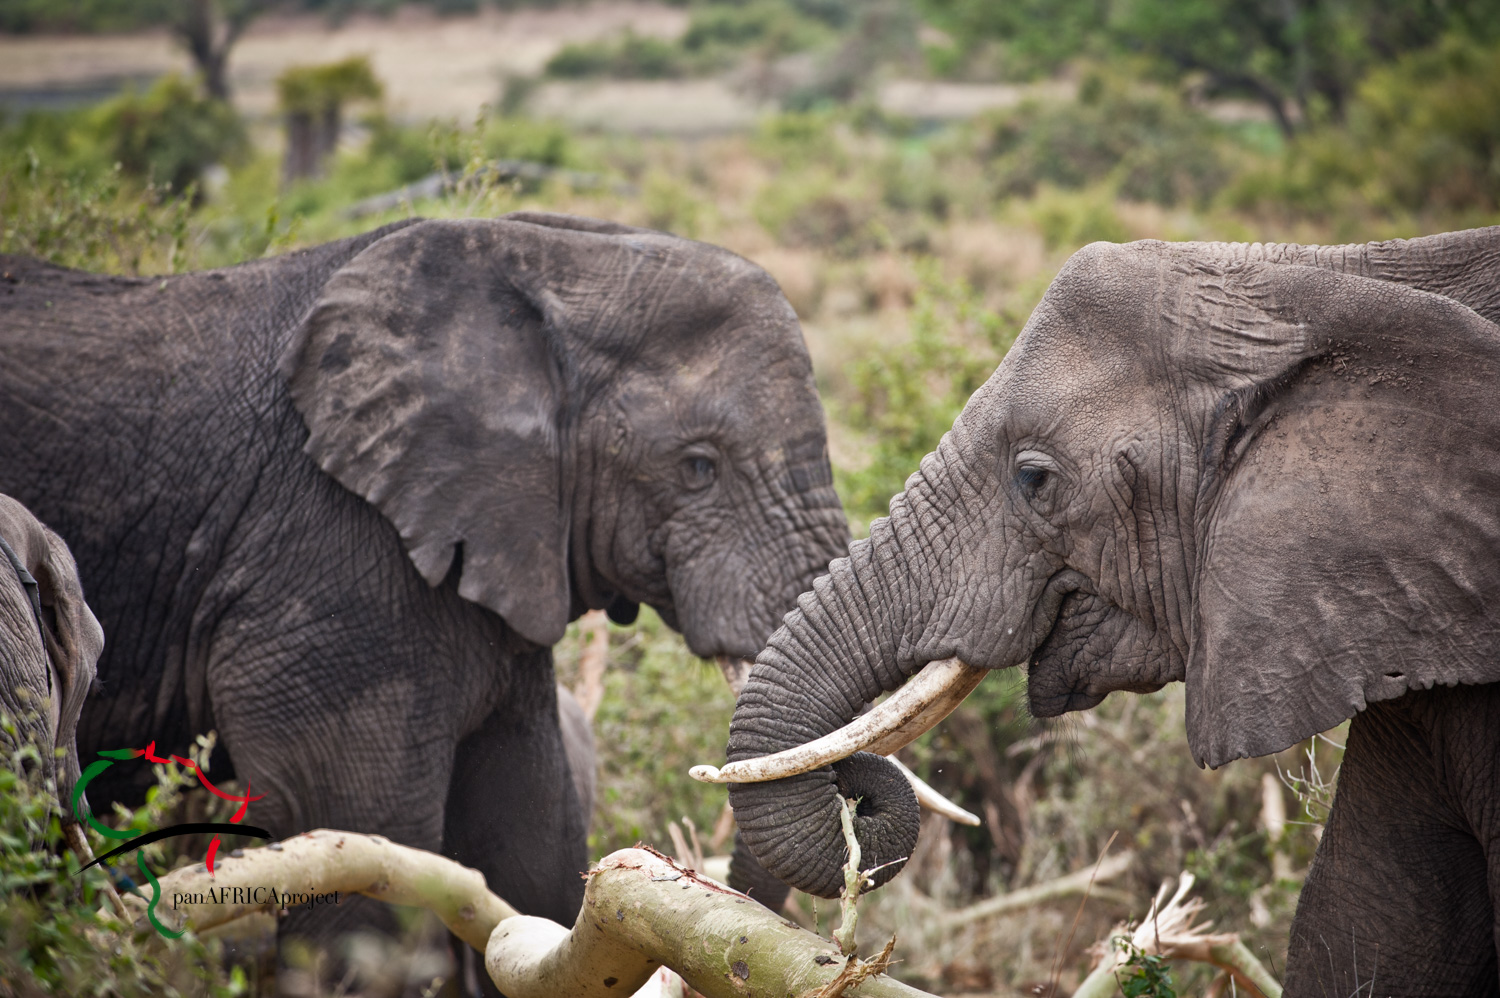 Two elephants eating